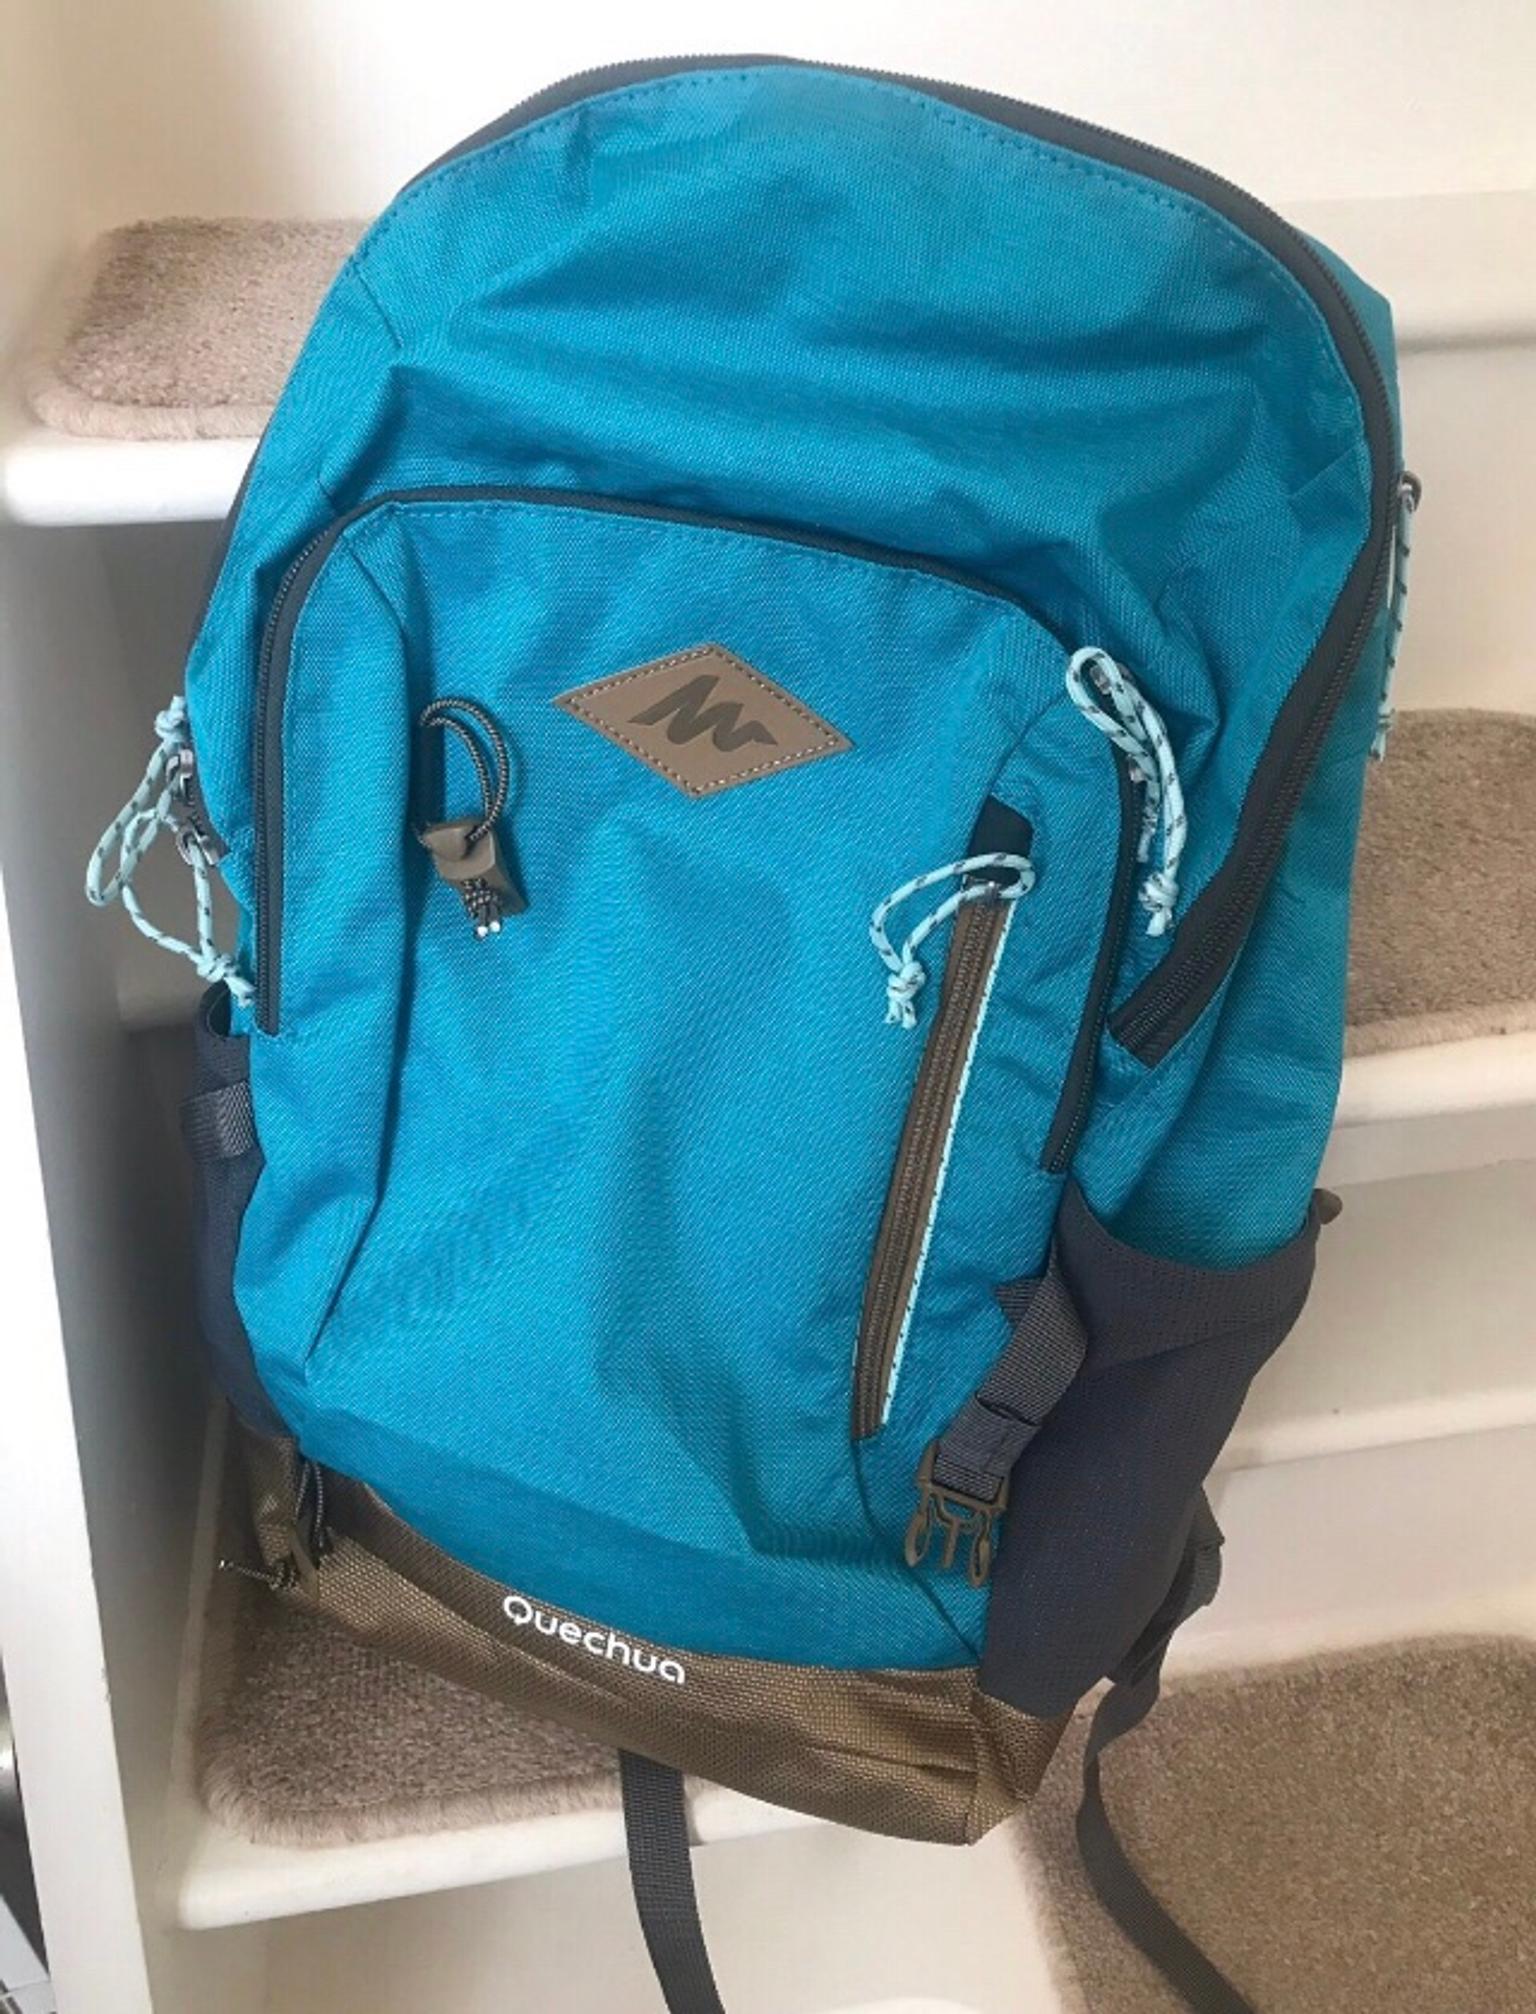 quechua 20l backpack